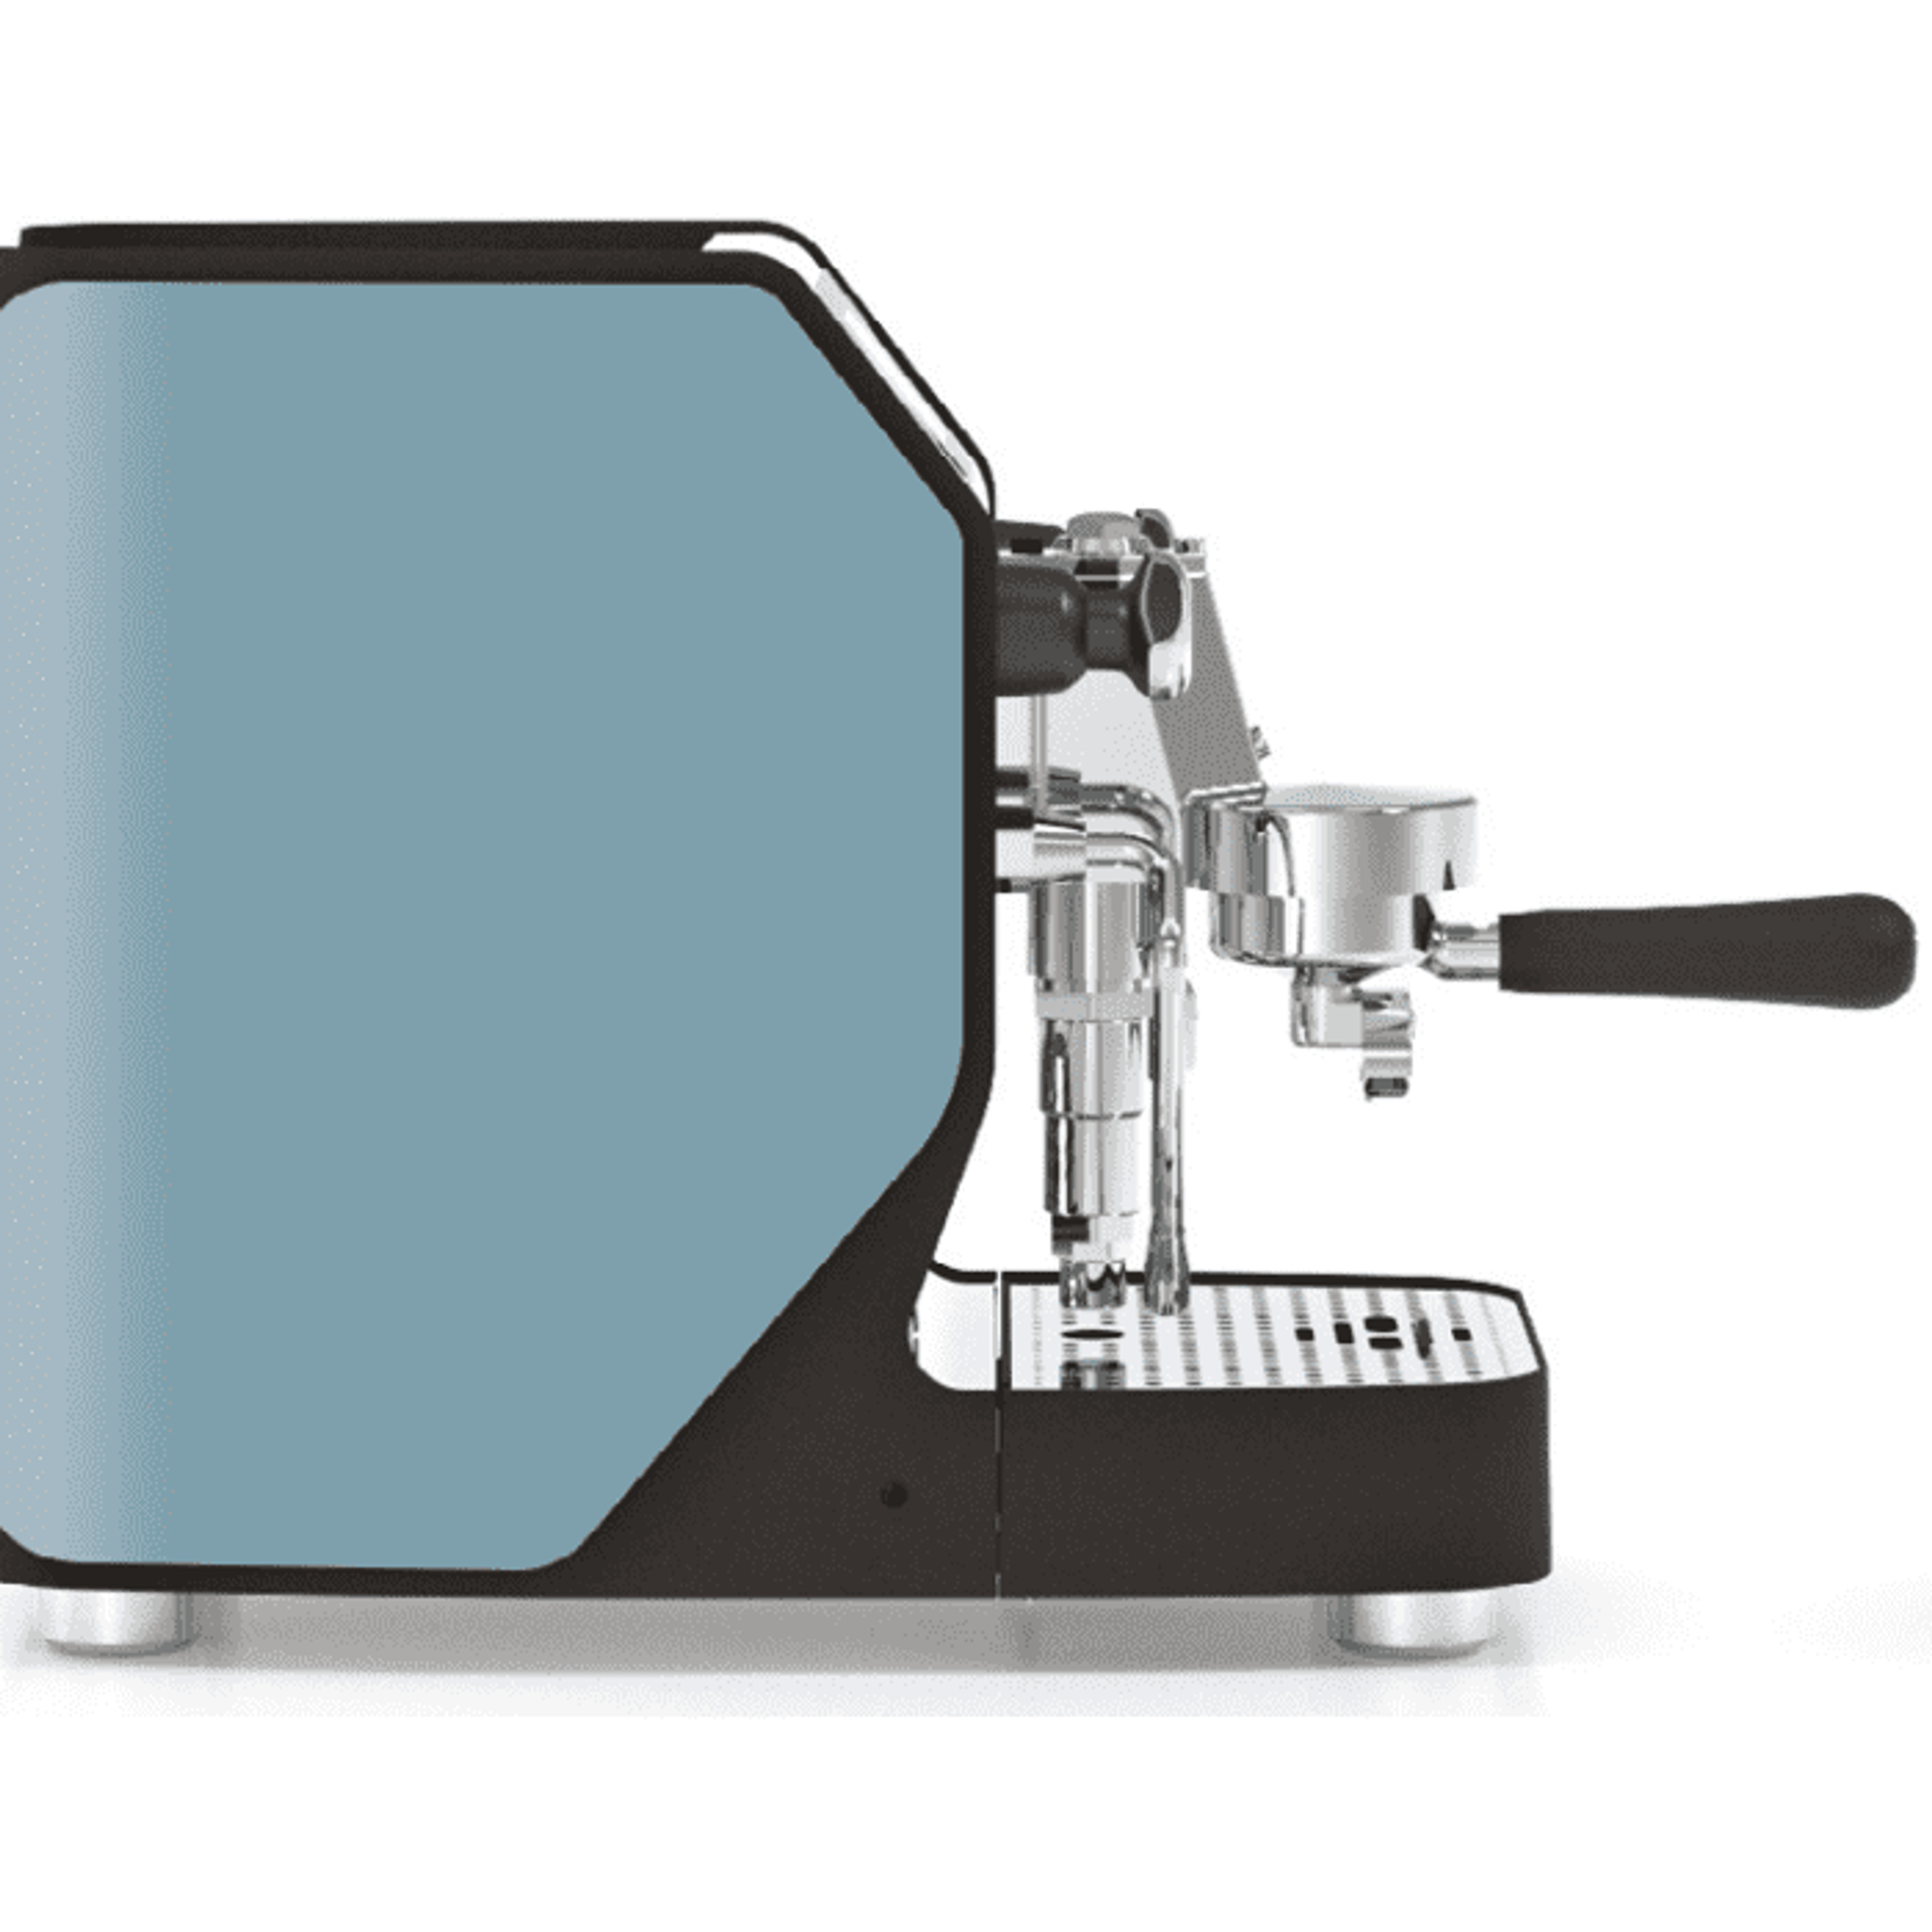 Vibiemme VBM New DOMOBAR Super Digital - Druckprofile, Dualboiler, Getriebepumpe, verschiedene Farben Espressomaschinen VBM Blaugrau   - Rheinland.Coffee